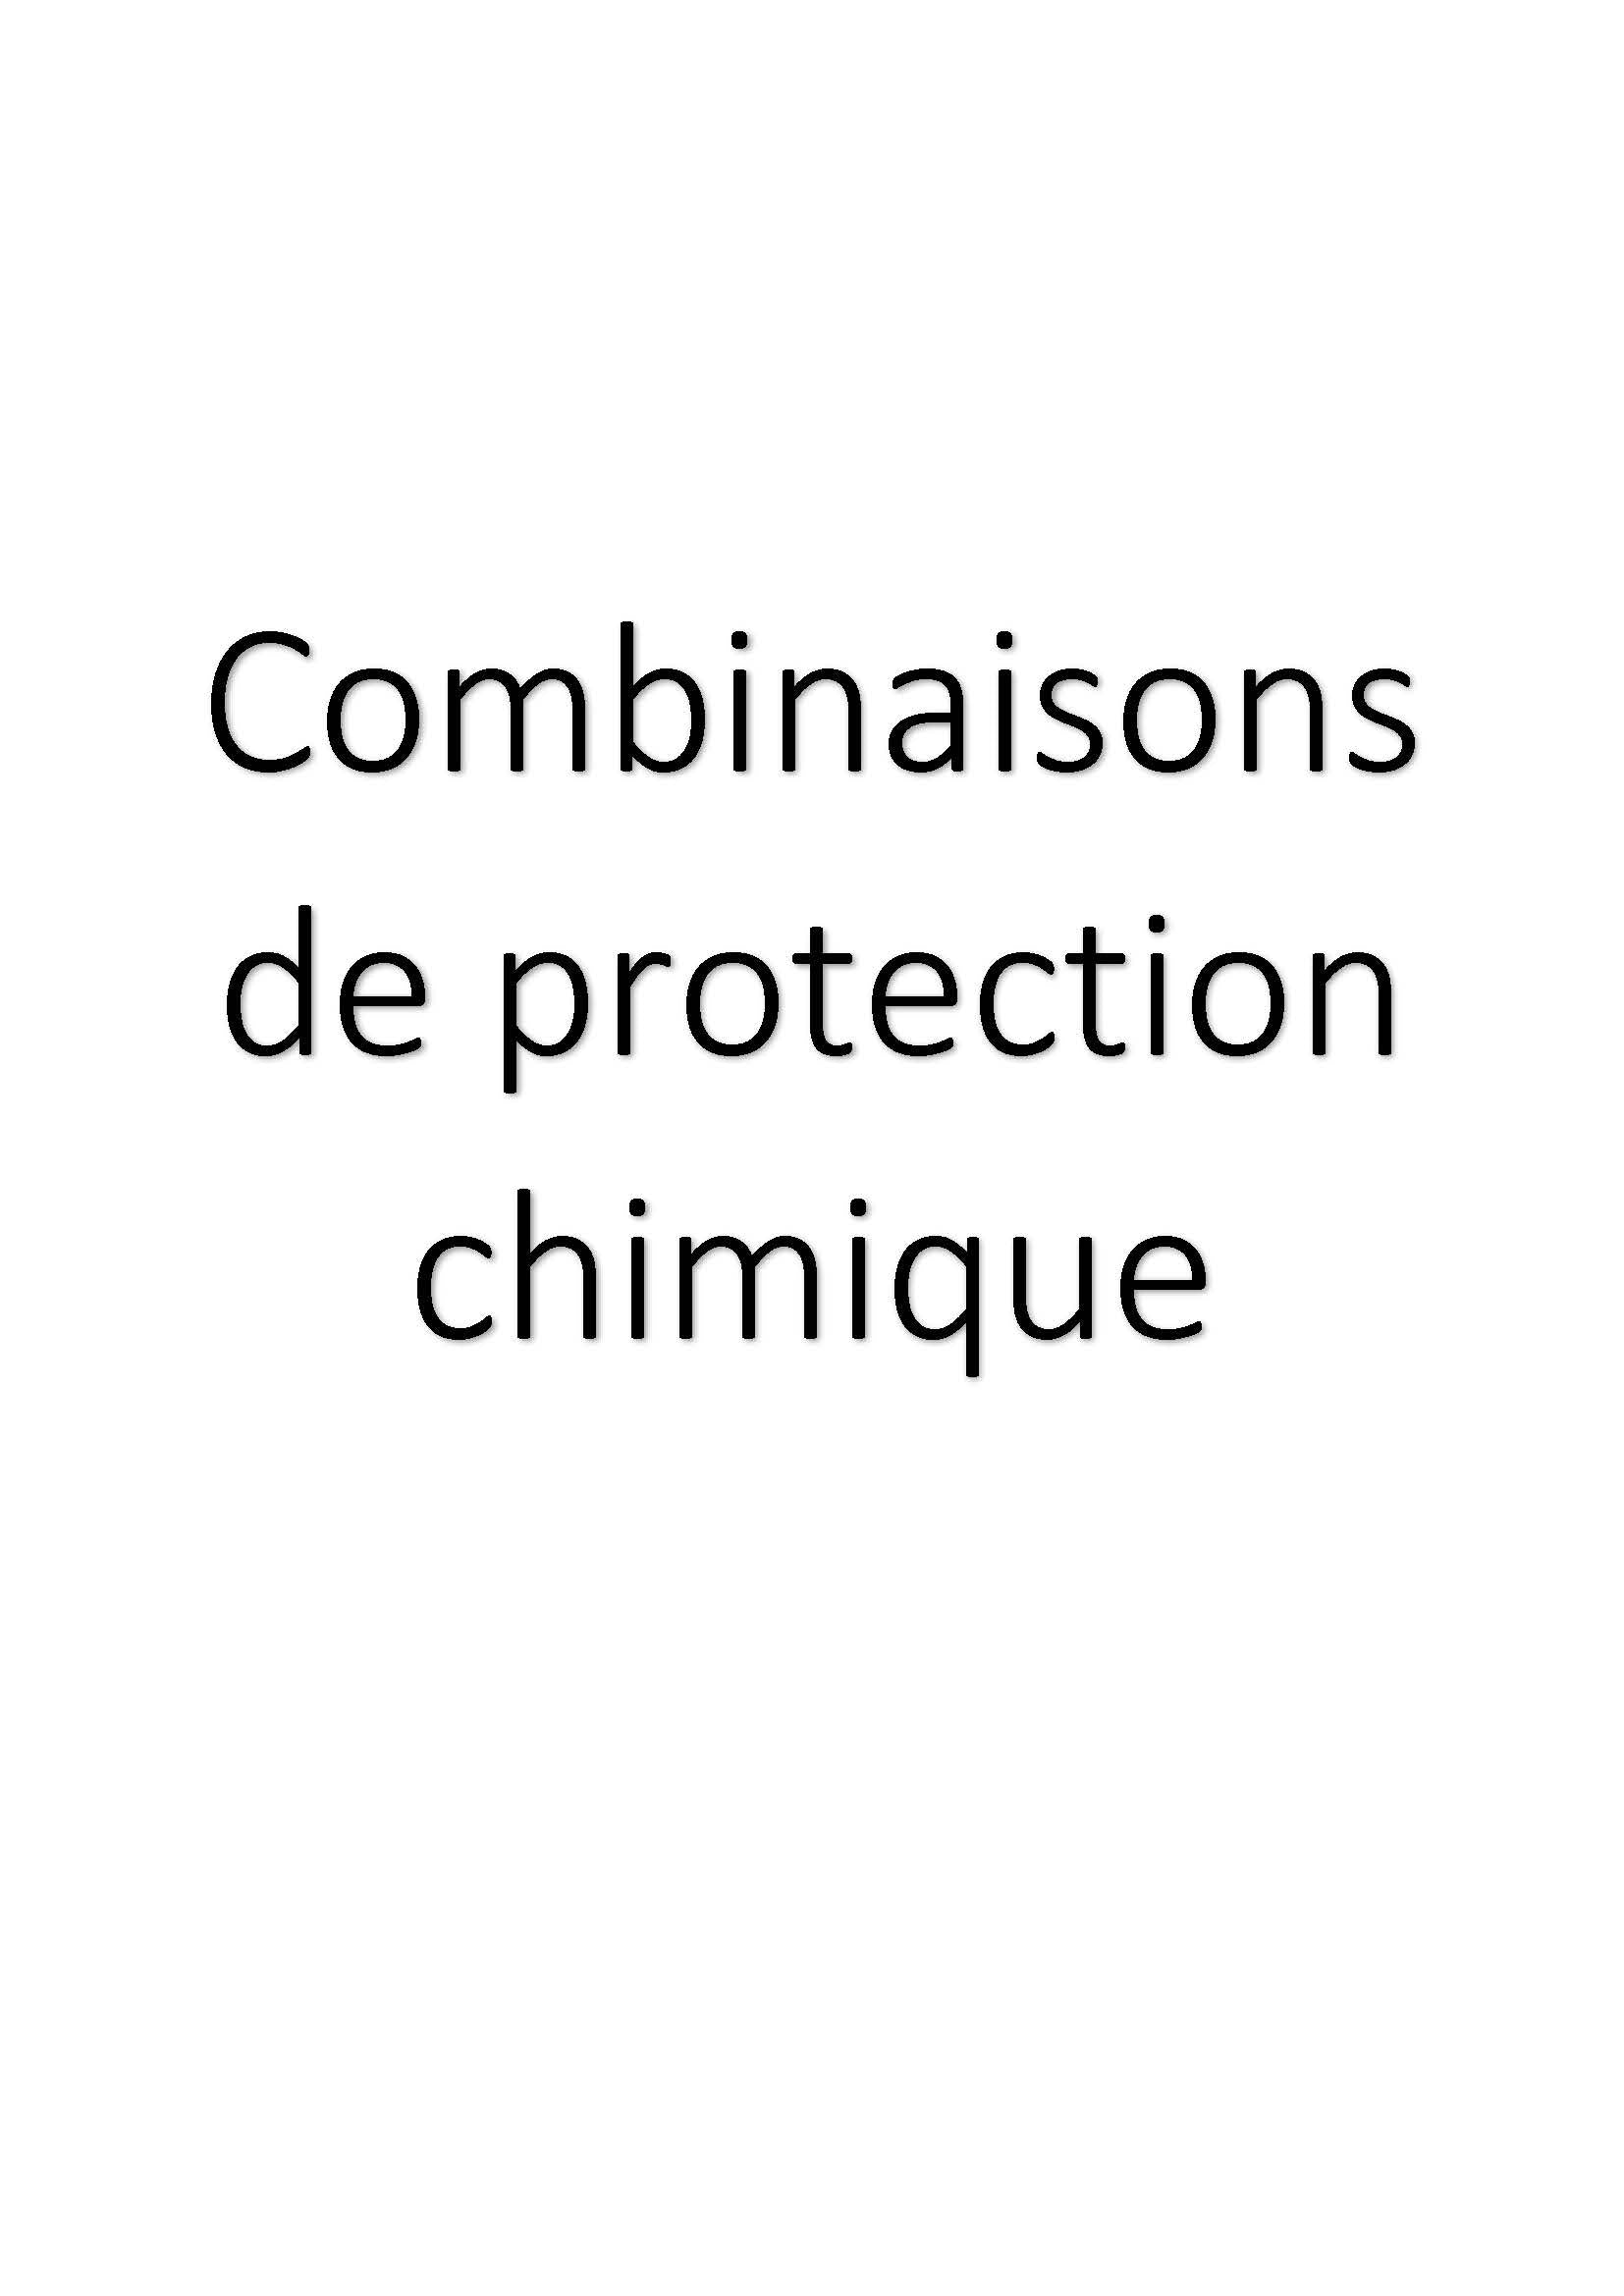 Combinaisons de protection chimique clicktofournisseur.com